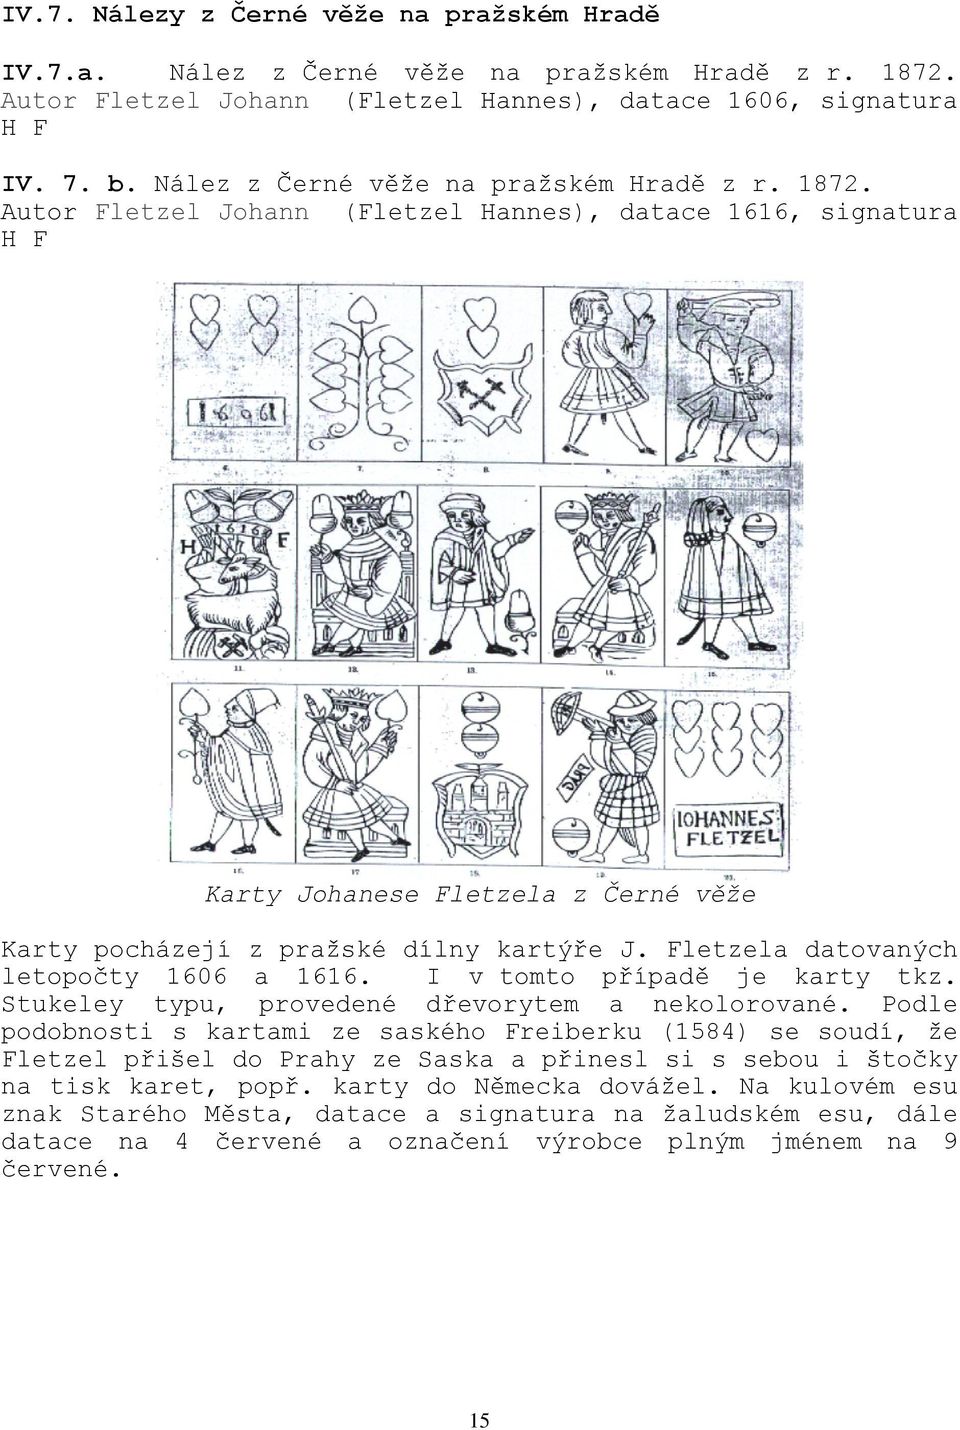 Fletzela datovaných letopočty 1606 a 1616. I v tomto případě je karty tkz. Stukeley typu, provedené dřevorytem a nekolorované.